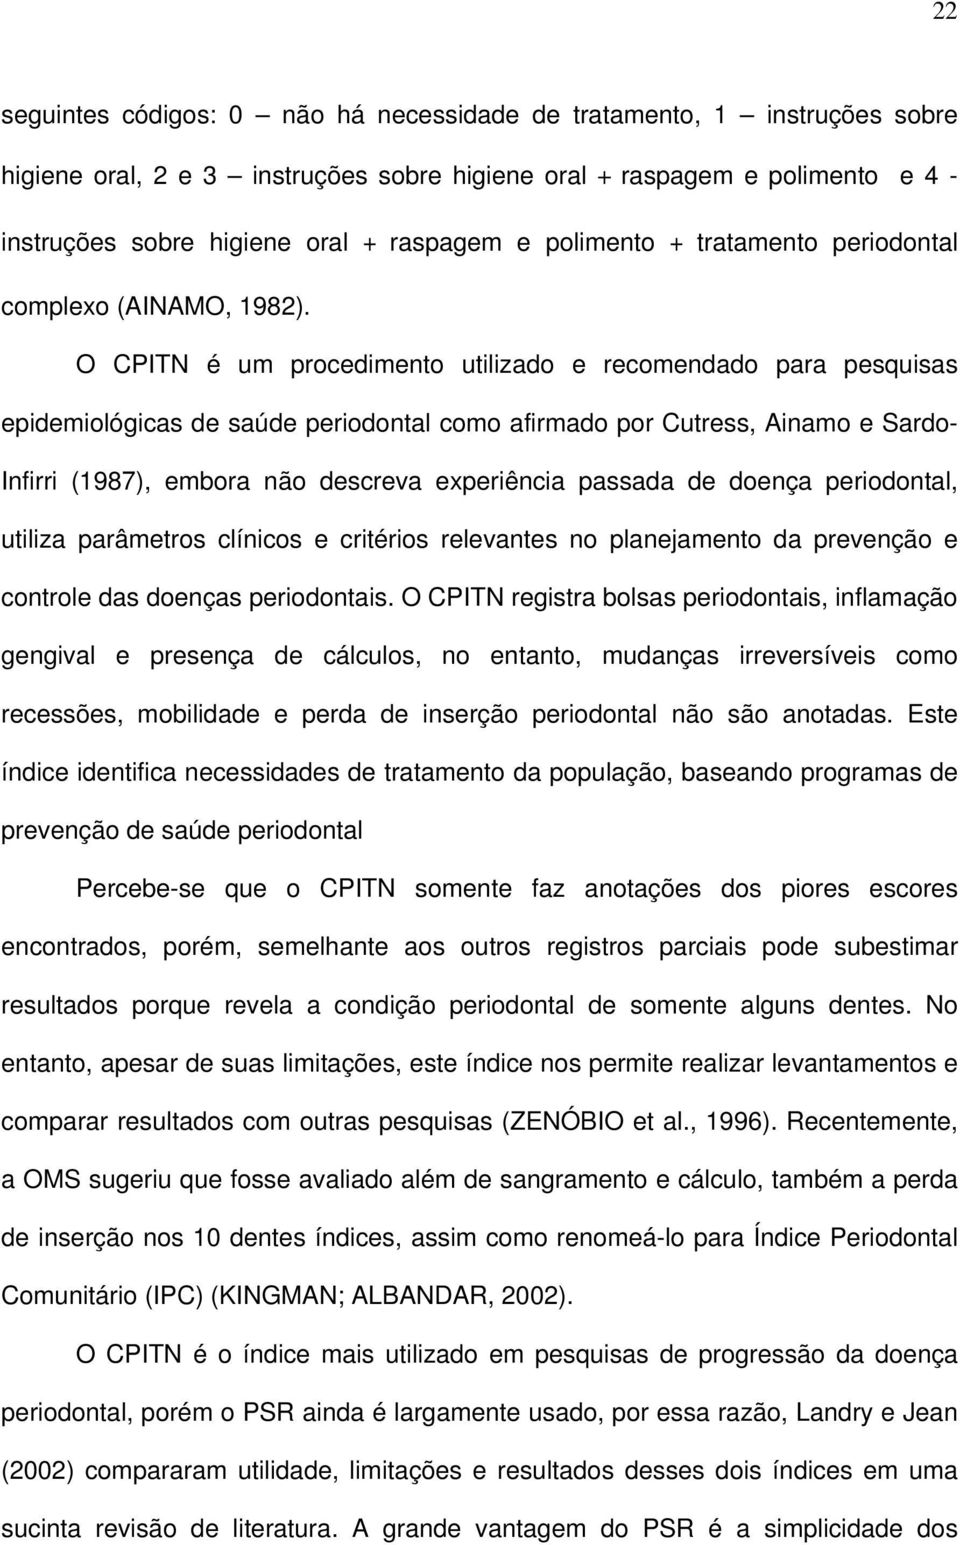 O CPITN é um procedimento utilizado e recomendado para pesquisas epidemiológicas de saúde periodontal como afirmado por Cutress, Ainamo e Sardo- Infirri (1987), embora não descreva experiência